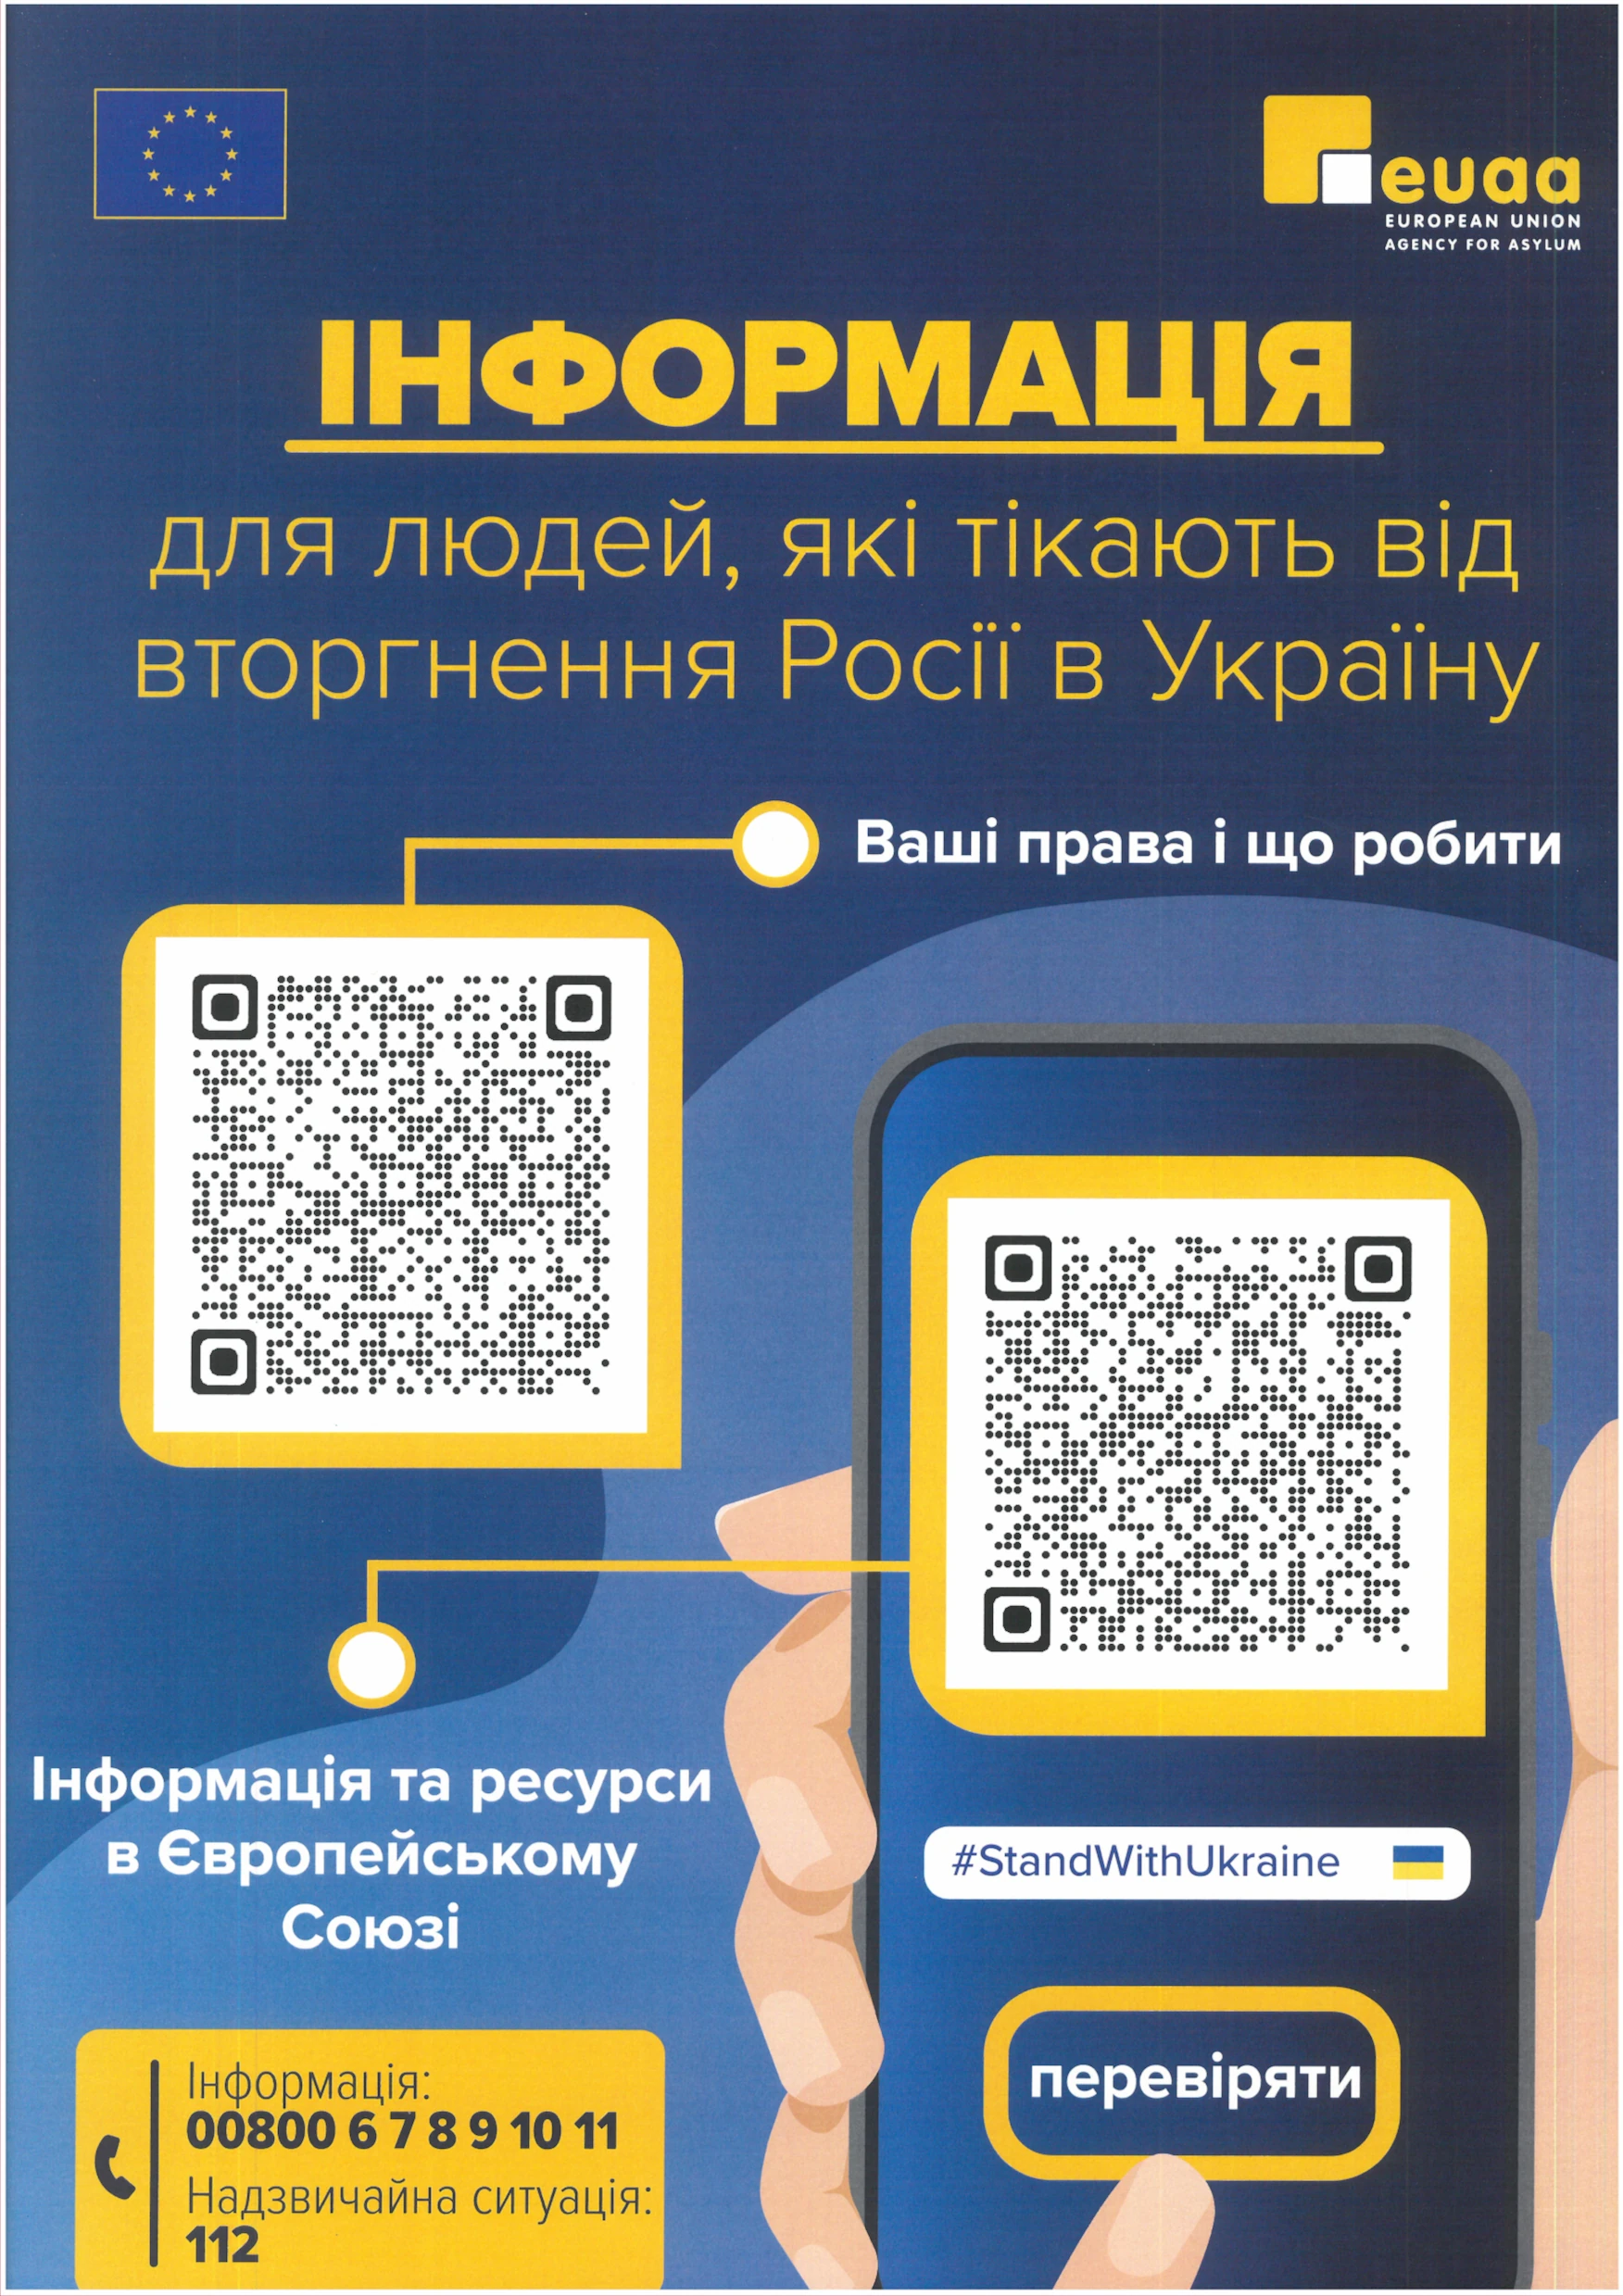 Plakat informacyjny w języku ukraińskim